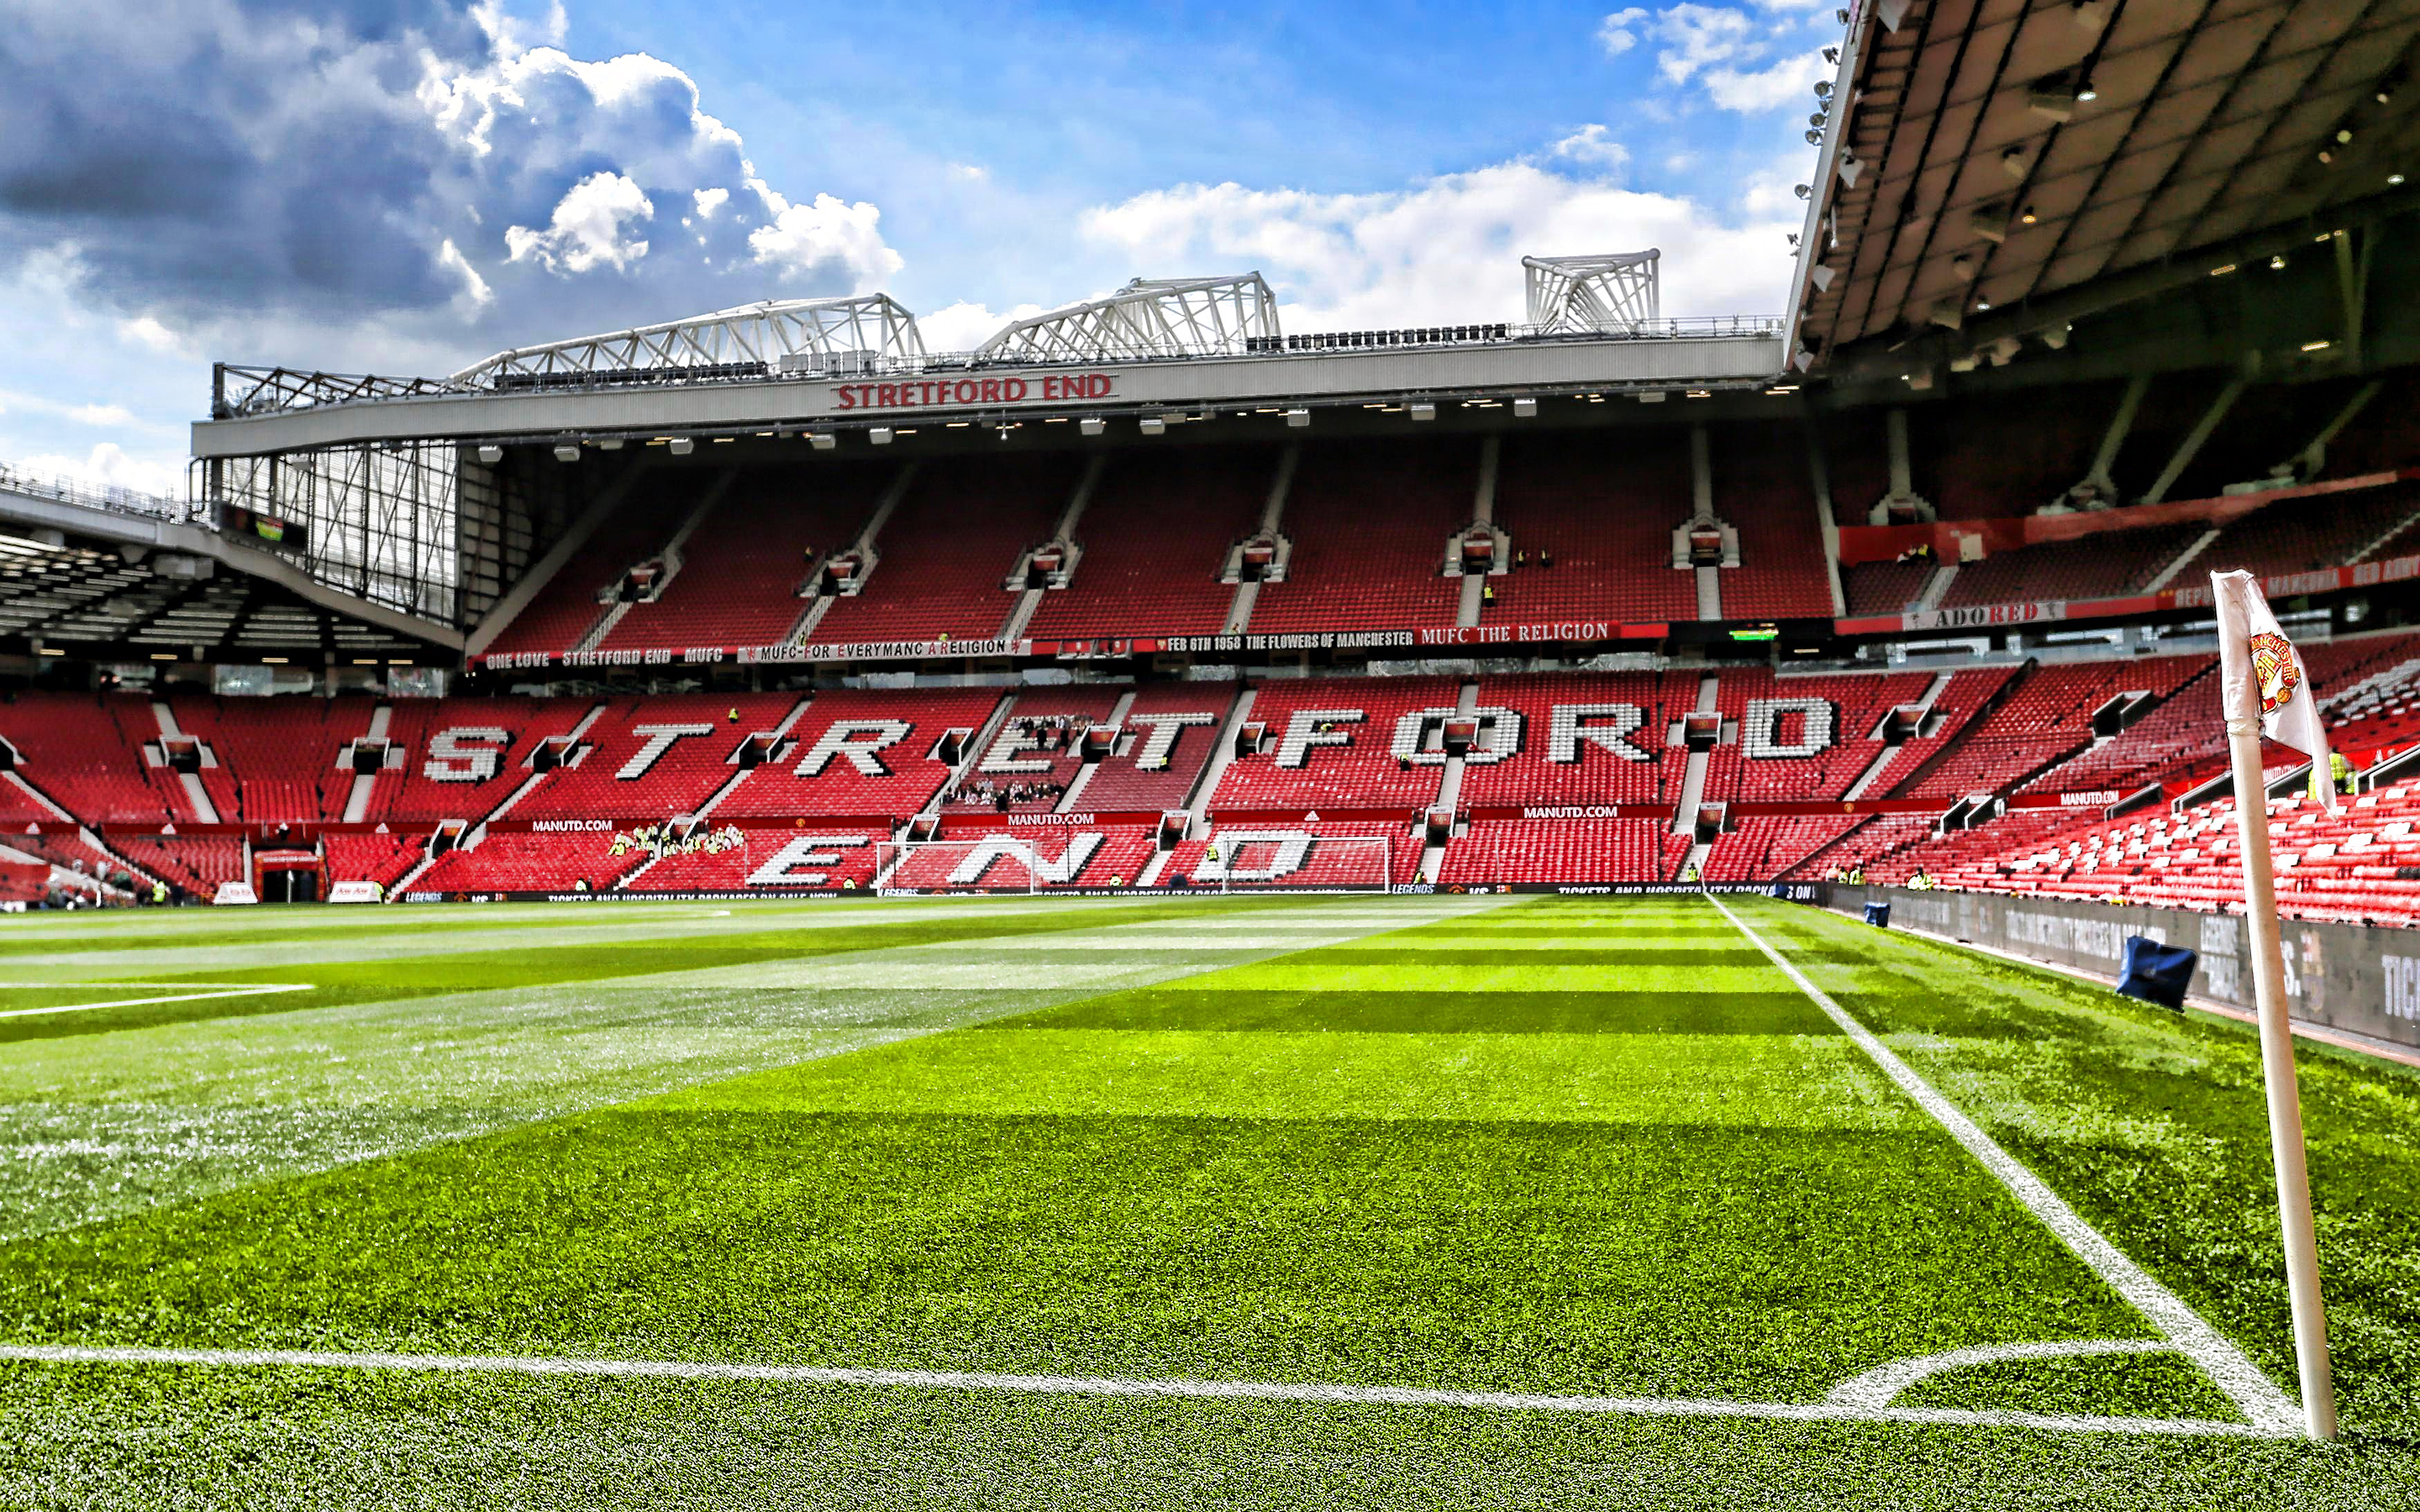 Những hình nền sân Old Trafford sẽ giúp bạn tận hưởng không gian tuyệt đẹp của sân vận động nổi tiếng này. Với chất lượng ảnh HD và những thiết kế tinh tế, hình nền sân Old Trafford sẽ đem lại cho bạn cảm giác như đang ở trên sân thực sự.